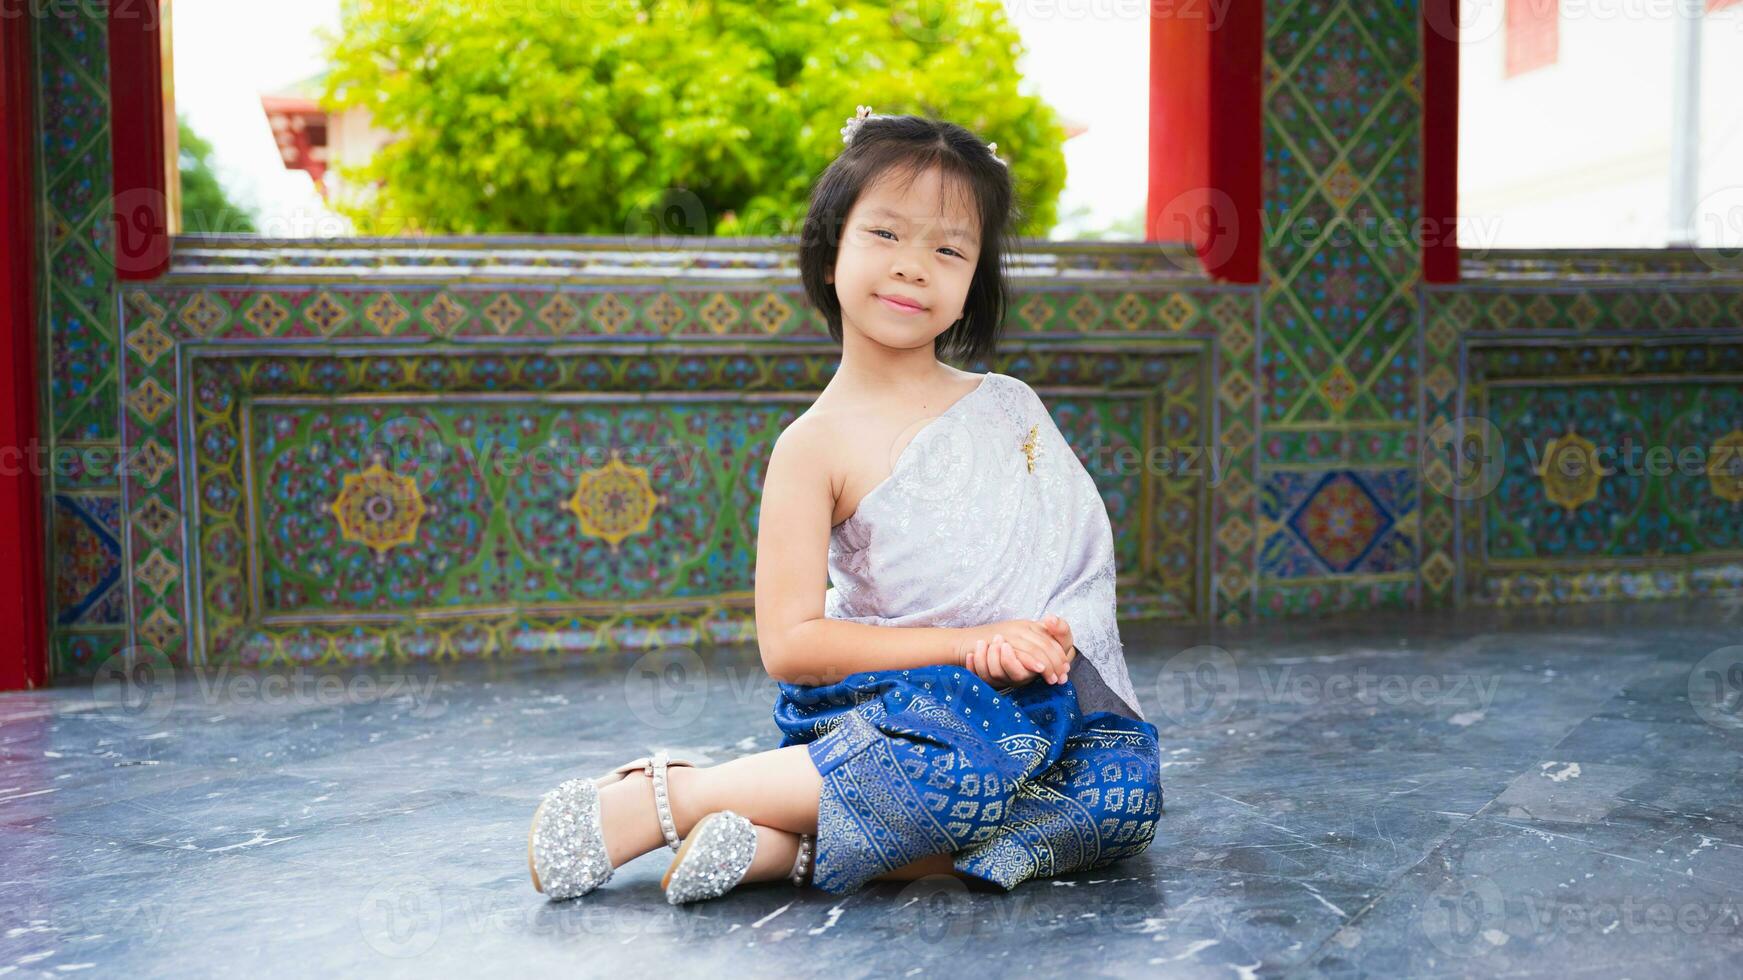 linda niña usa tailandés vestir con plata faja y azul taparrabo recortado con oro. asiático niño visitas templo en Tailandia a ver Arte y cultura con su familia. niño sentadillas sentar en el piso y sonrisas foto